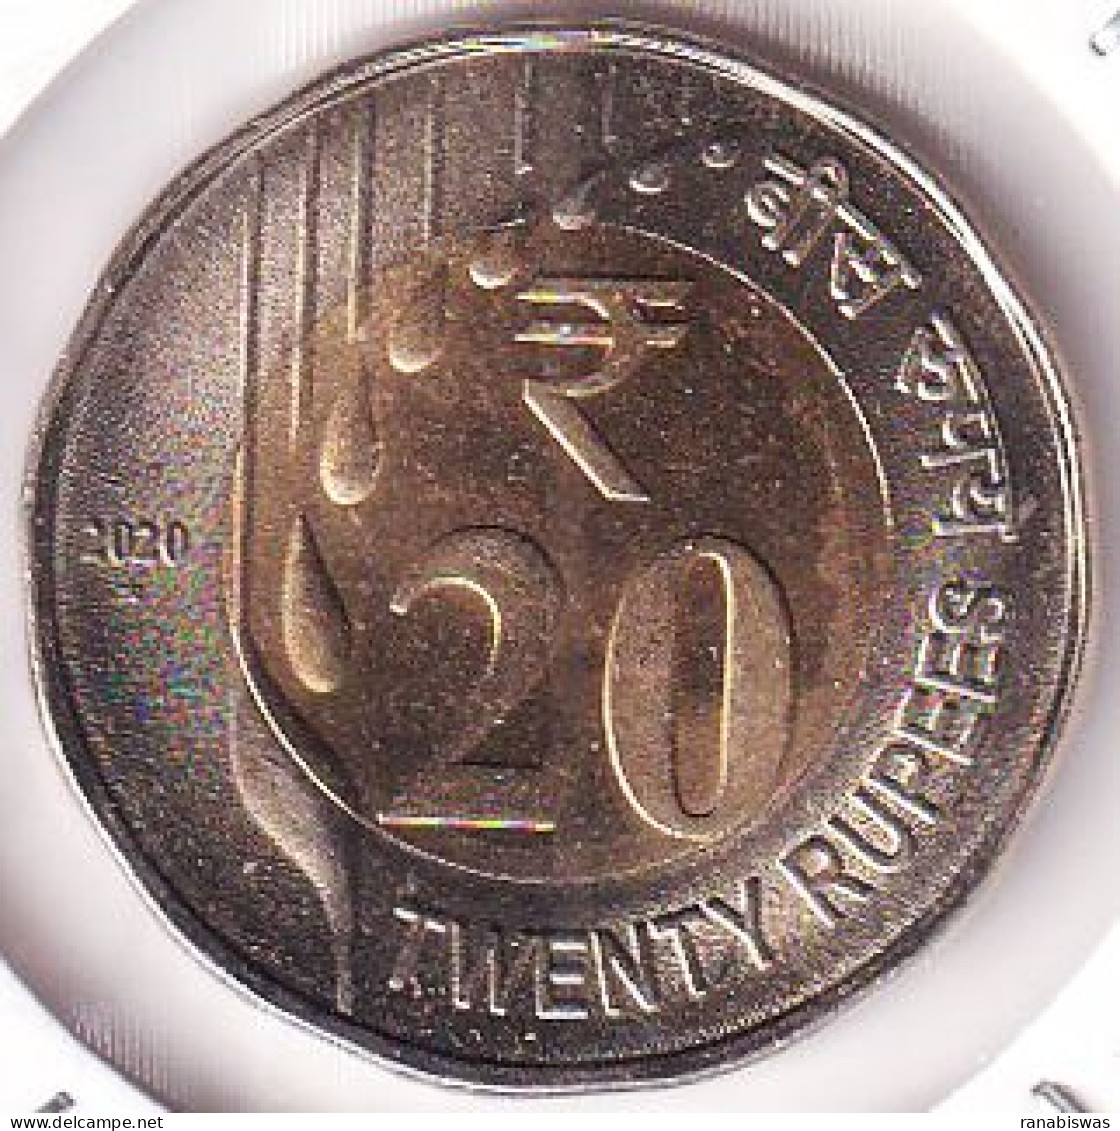 INDIA COIN LOT 438, 20 RUPEES 2020, RAIN DROPS, HYDERABAD MINT, UNC - Inde